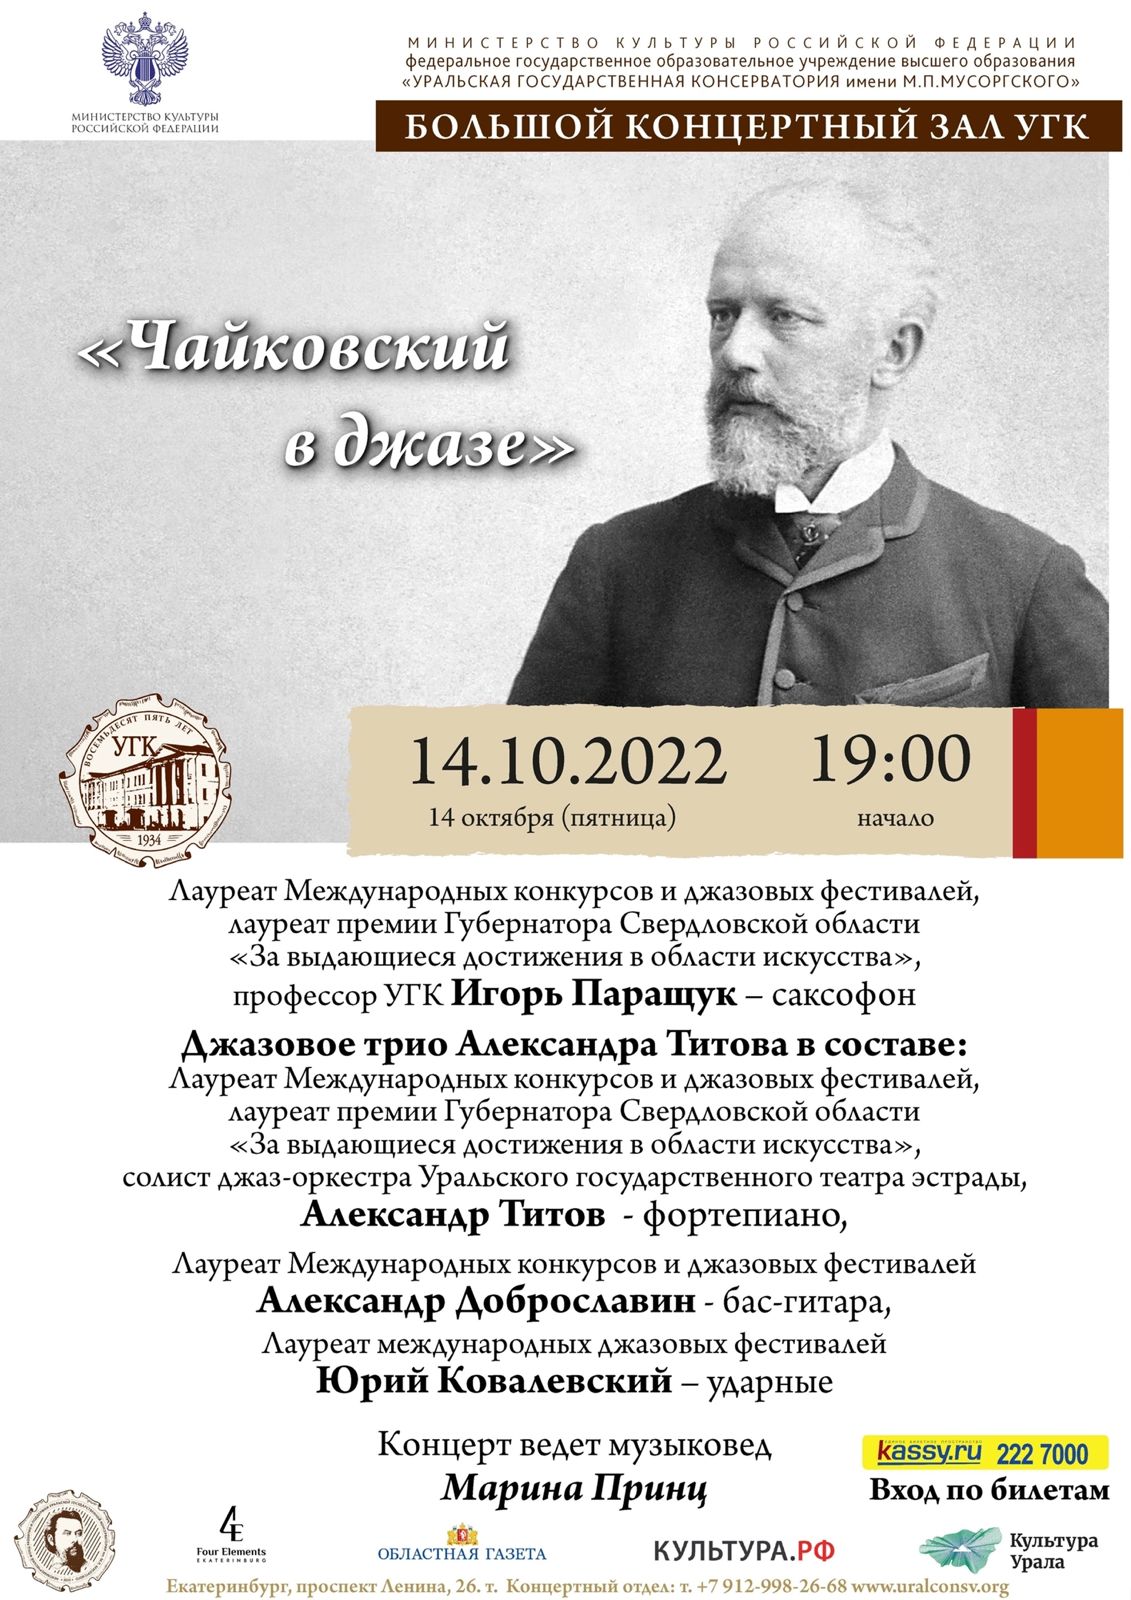 «Чайковский в джазе»
14.10.2022